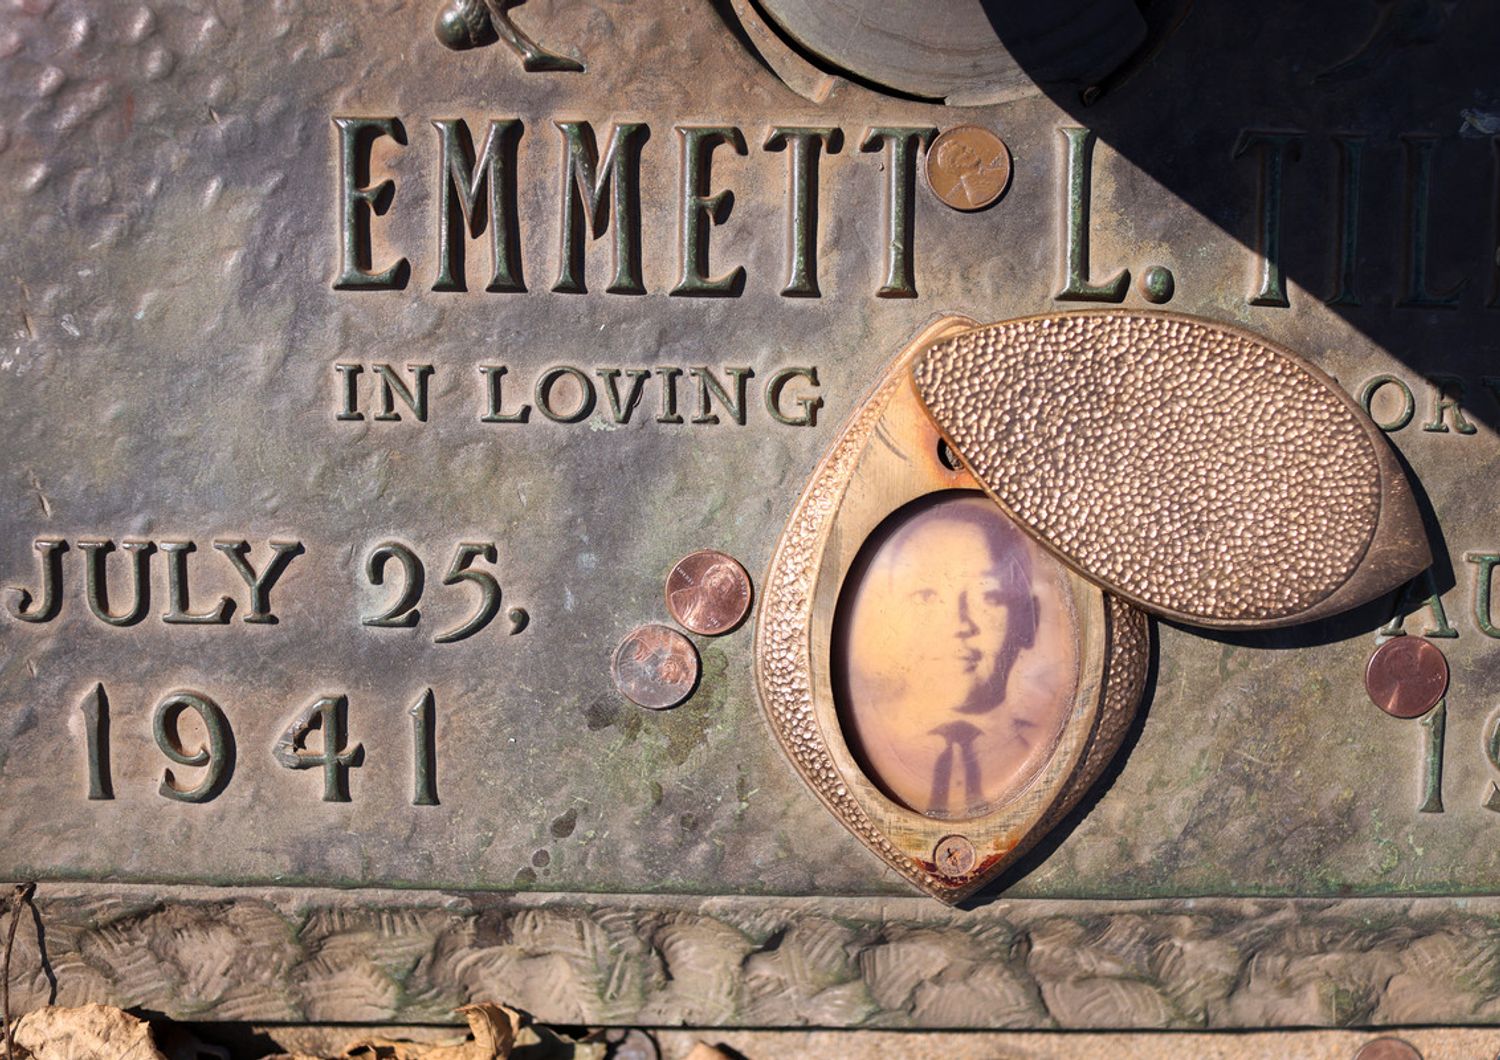 La tomba di Emmett Till